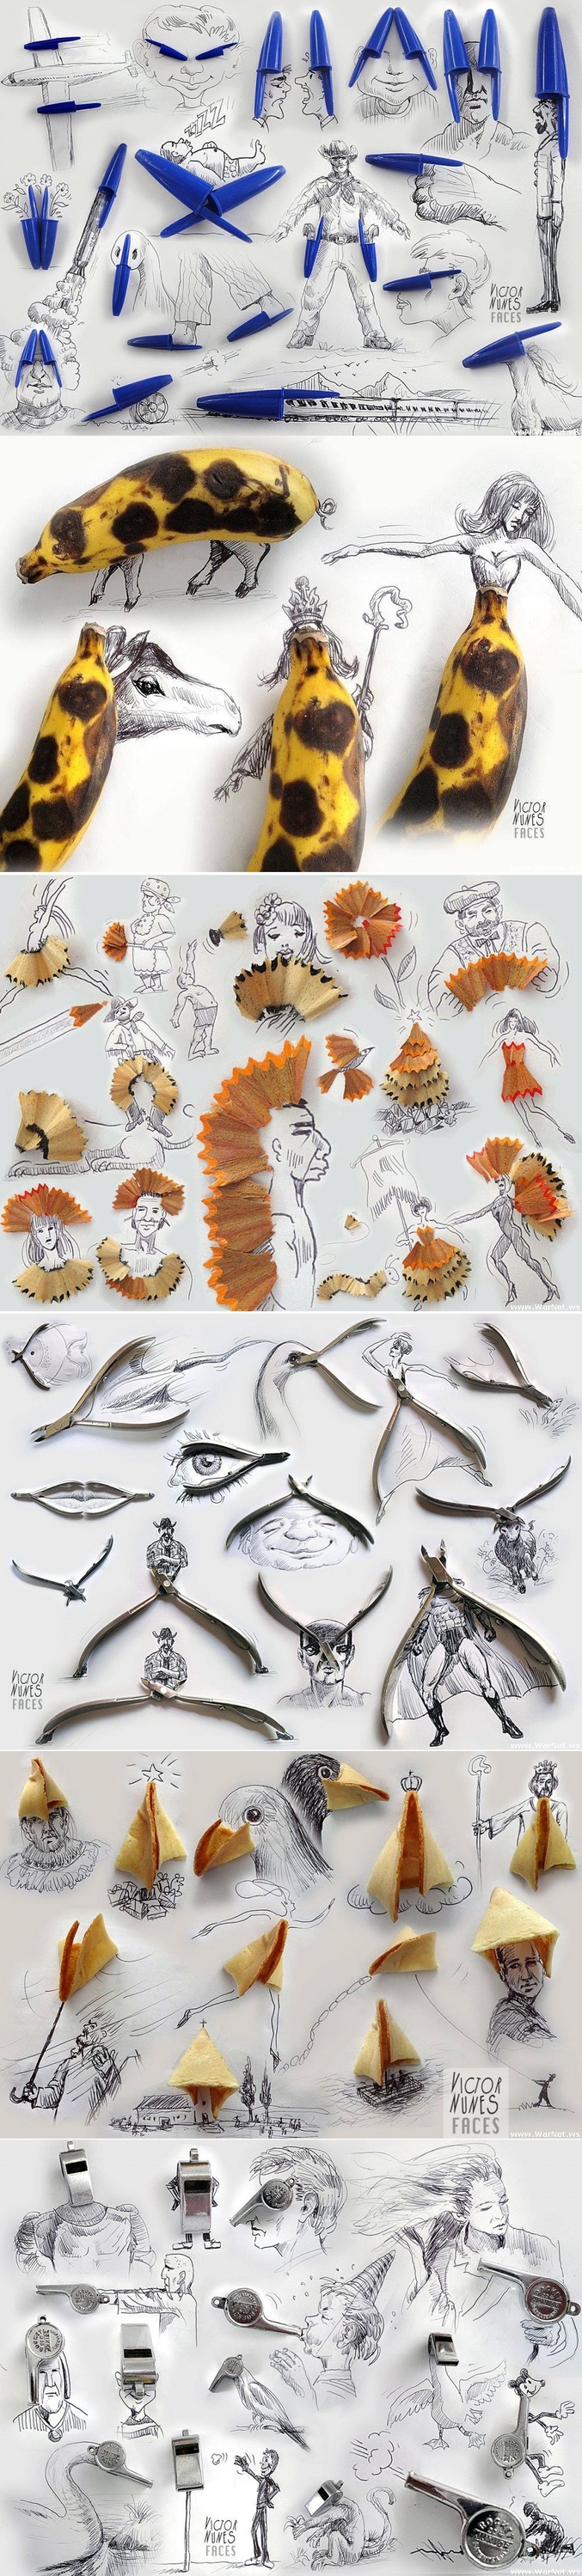 Victor Nunes, artiste espagnol, détourne avec humour des objets de tous les jours pour les intégrer dans ses dessins.
https://www.facebook.com/victornunesfaces